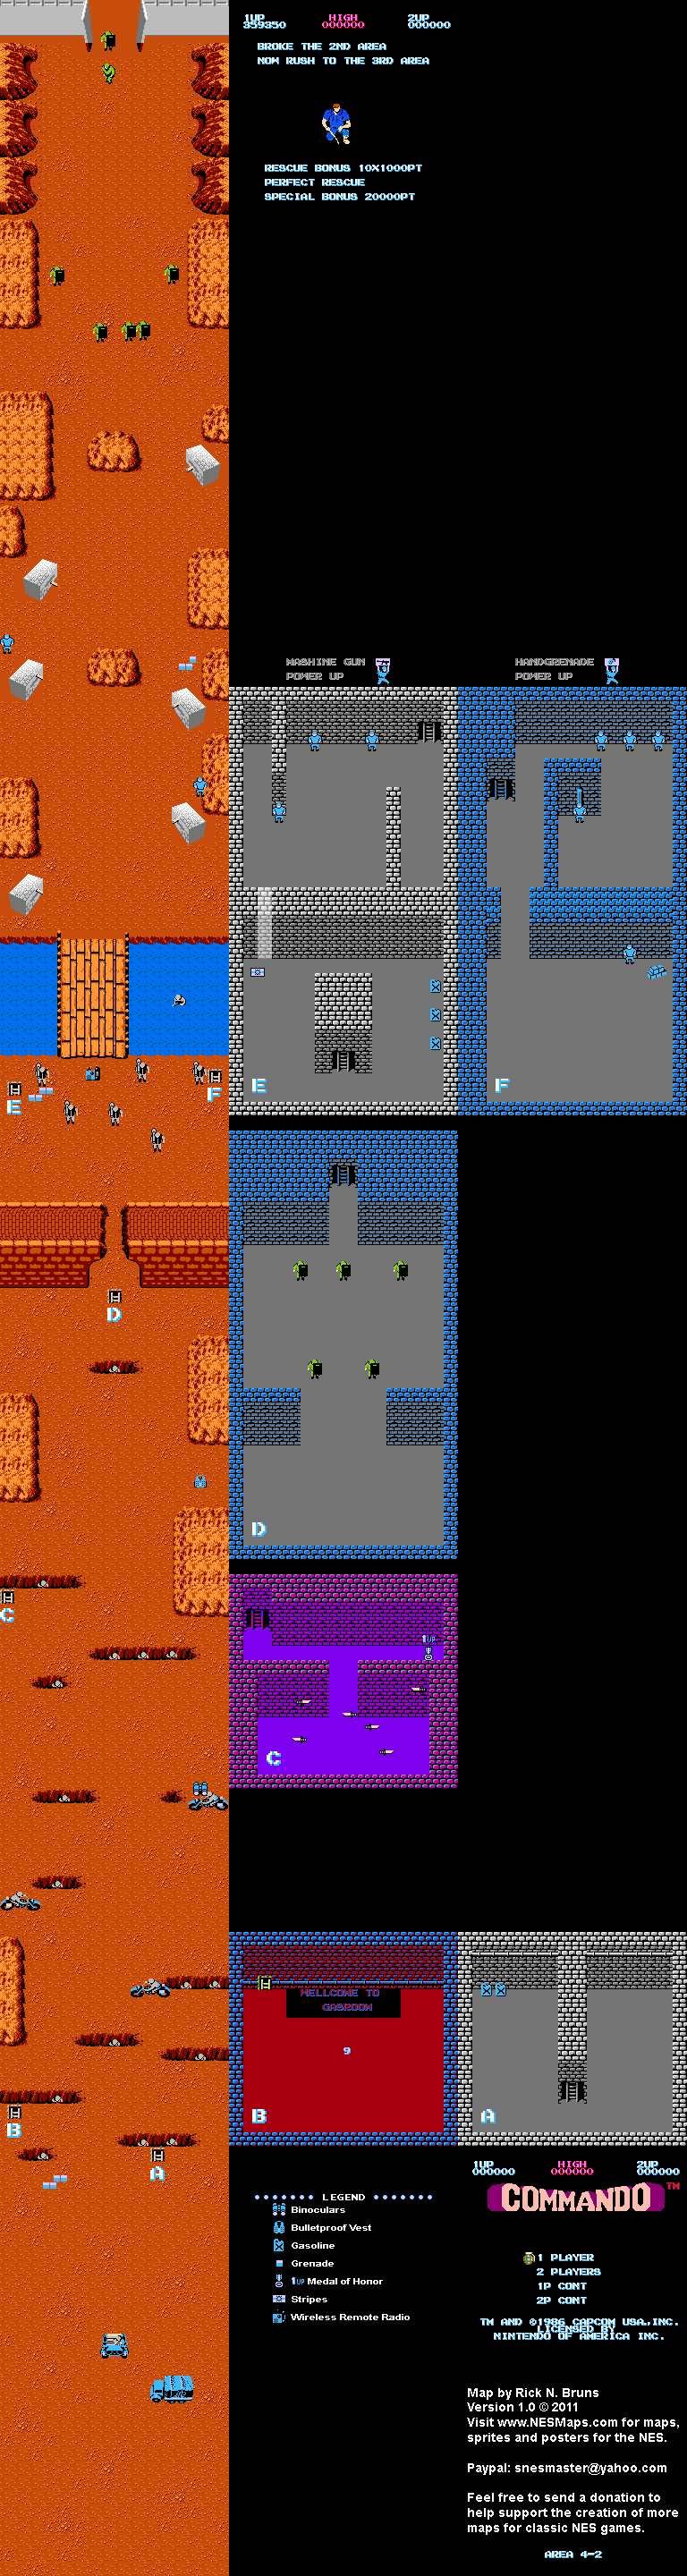 Commando - Area 4-2 - Nintendo NES Map